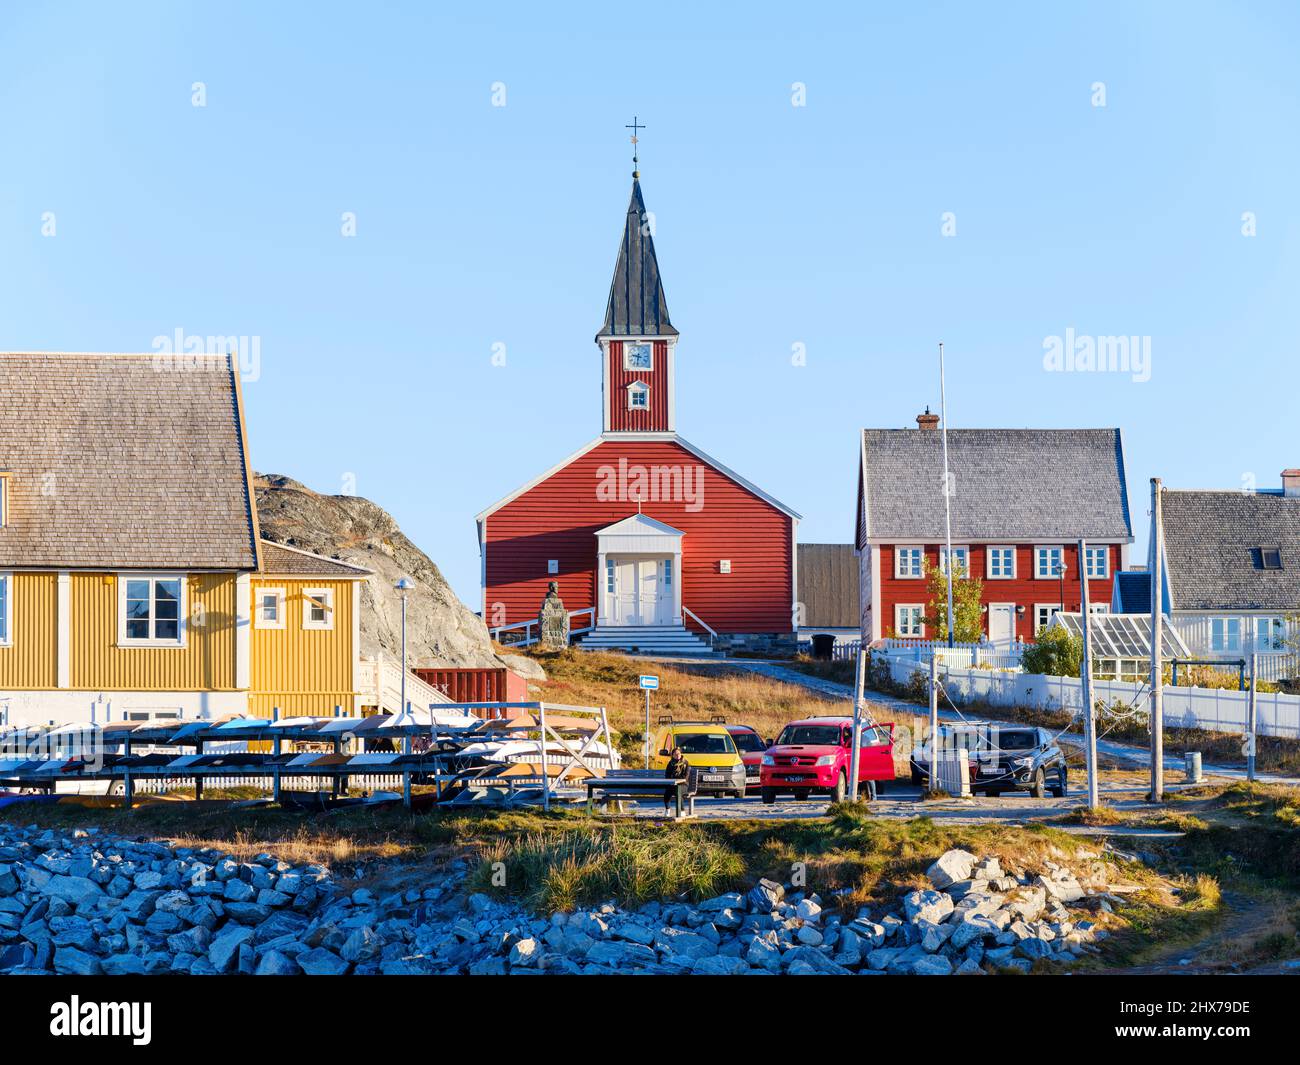 Église de notre sauveur ou Cathédrale de Nuuk (Annaassisitta Oqaluffia). Nuuk la capitale du Groenland à la fin de l'automne. Amérique du Nord, Groenland Banque D'Images